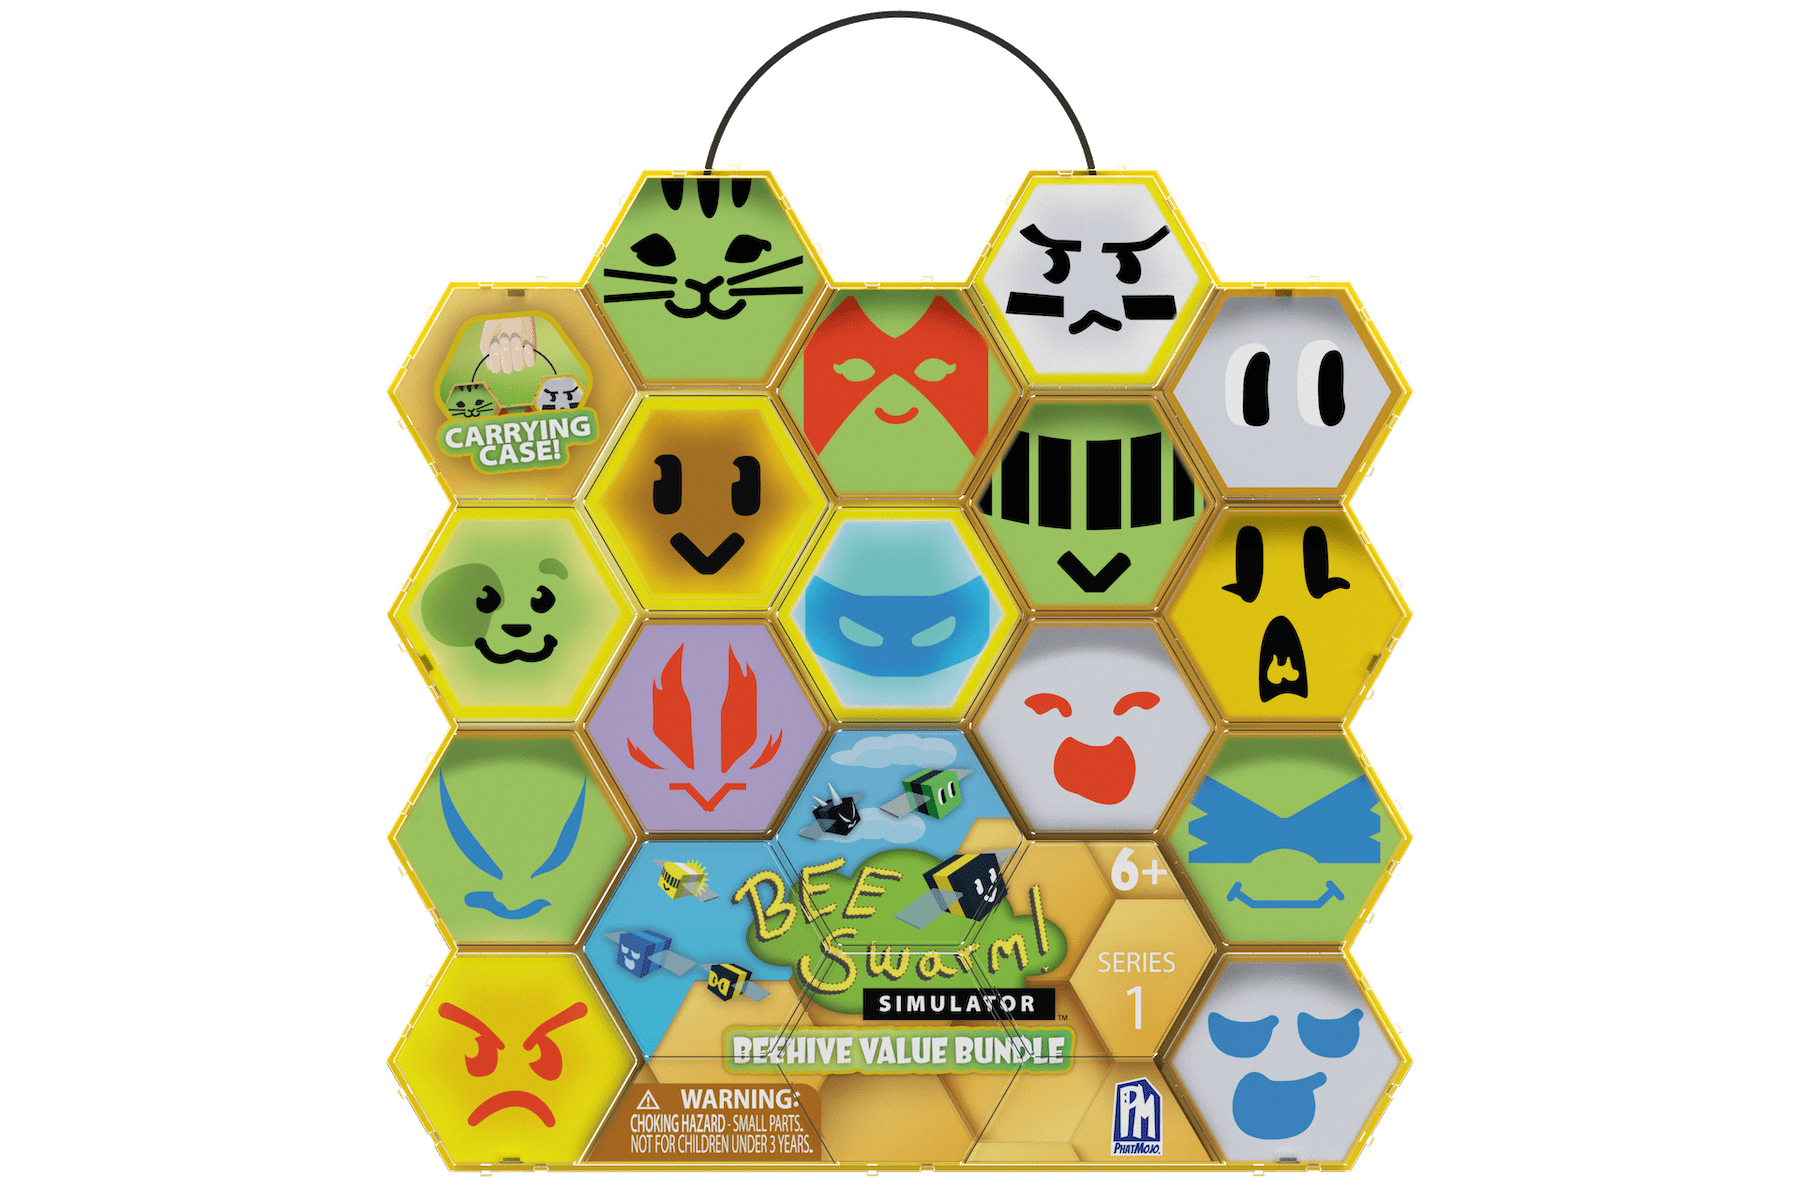 Bee Swarm Simulator – Beehive Value Bundle